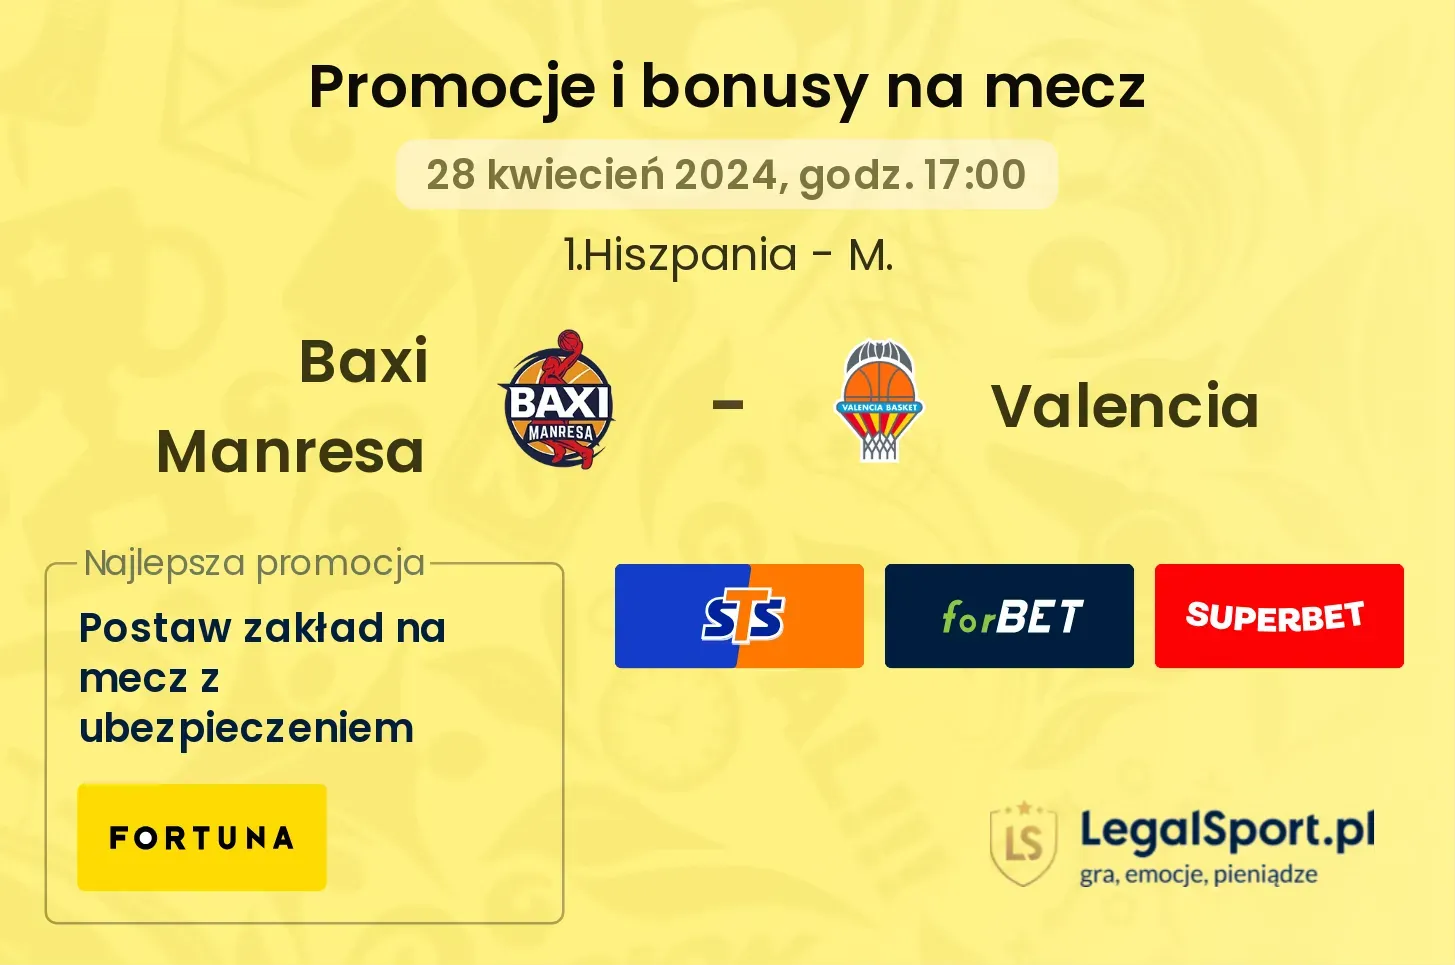 Baxi Manresa - Valencia promocje bonusy na mecz